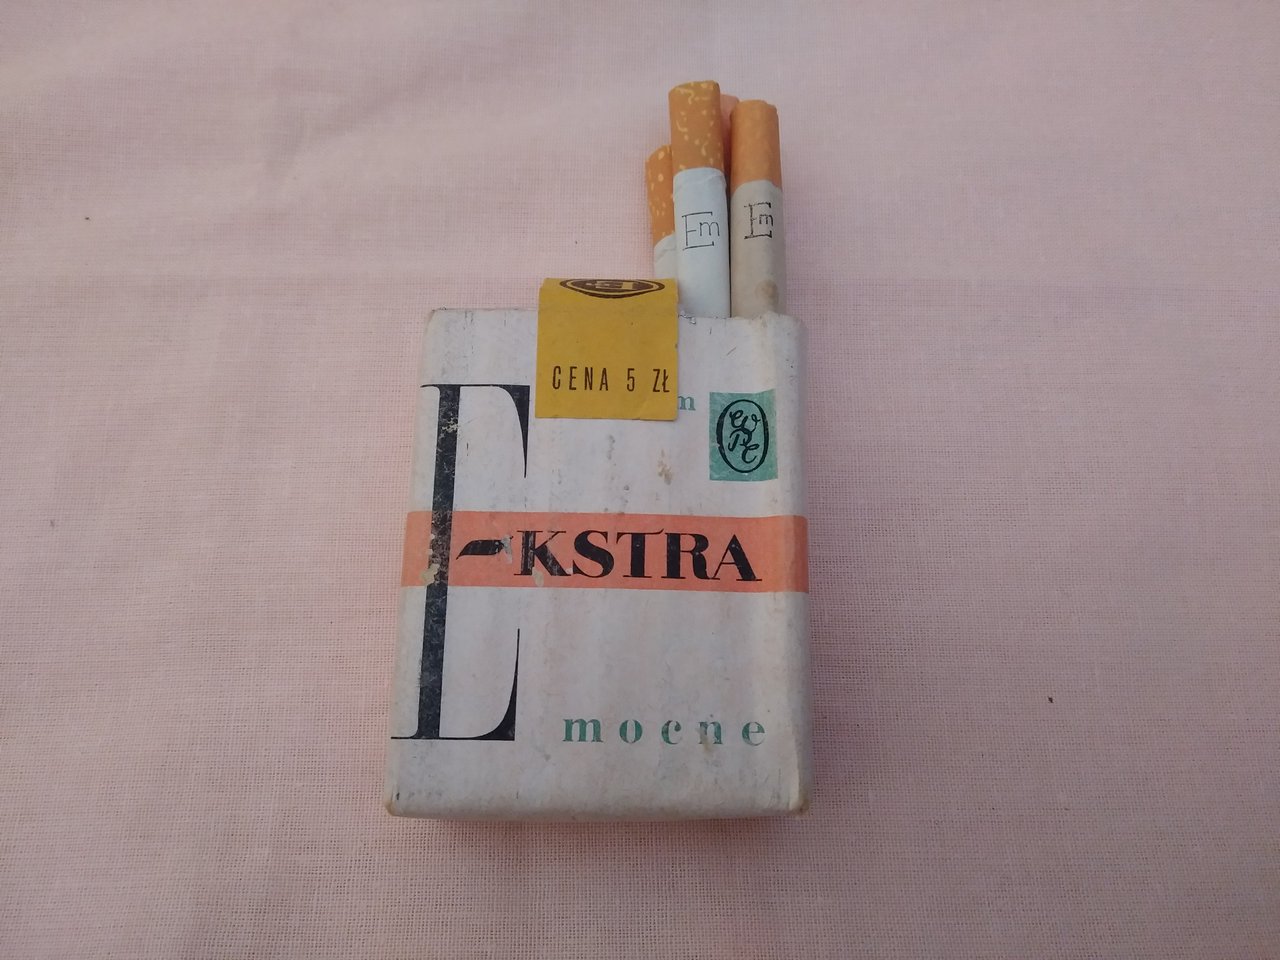 papierosy extra mocne z filtrem